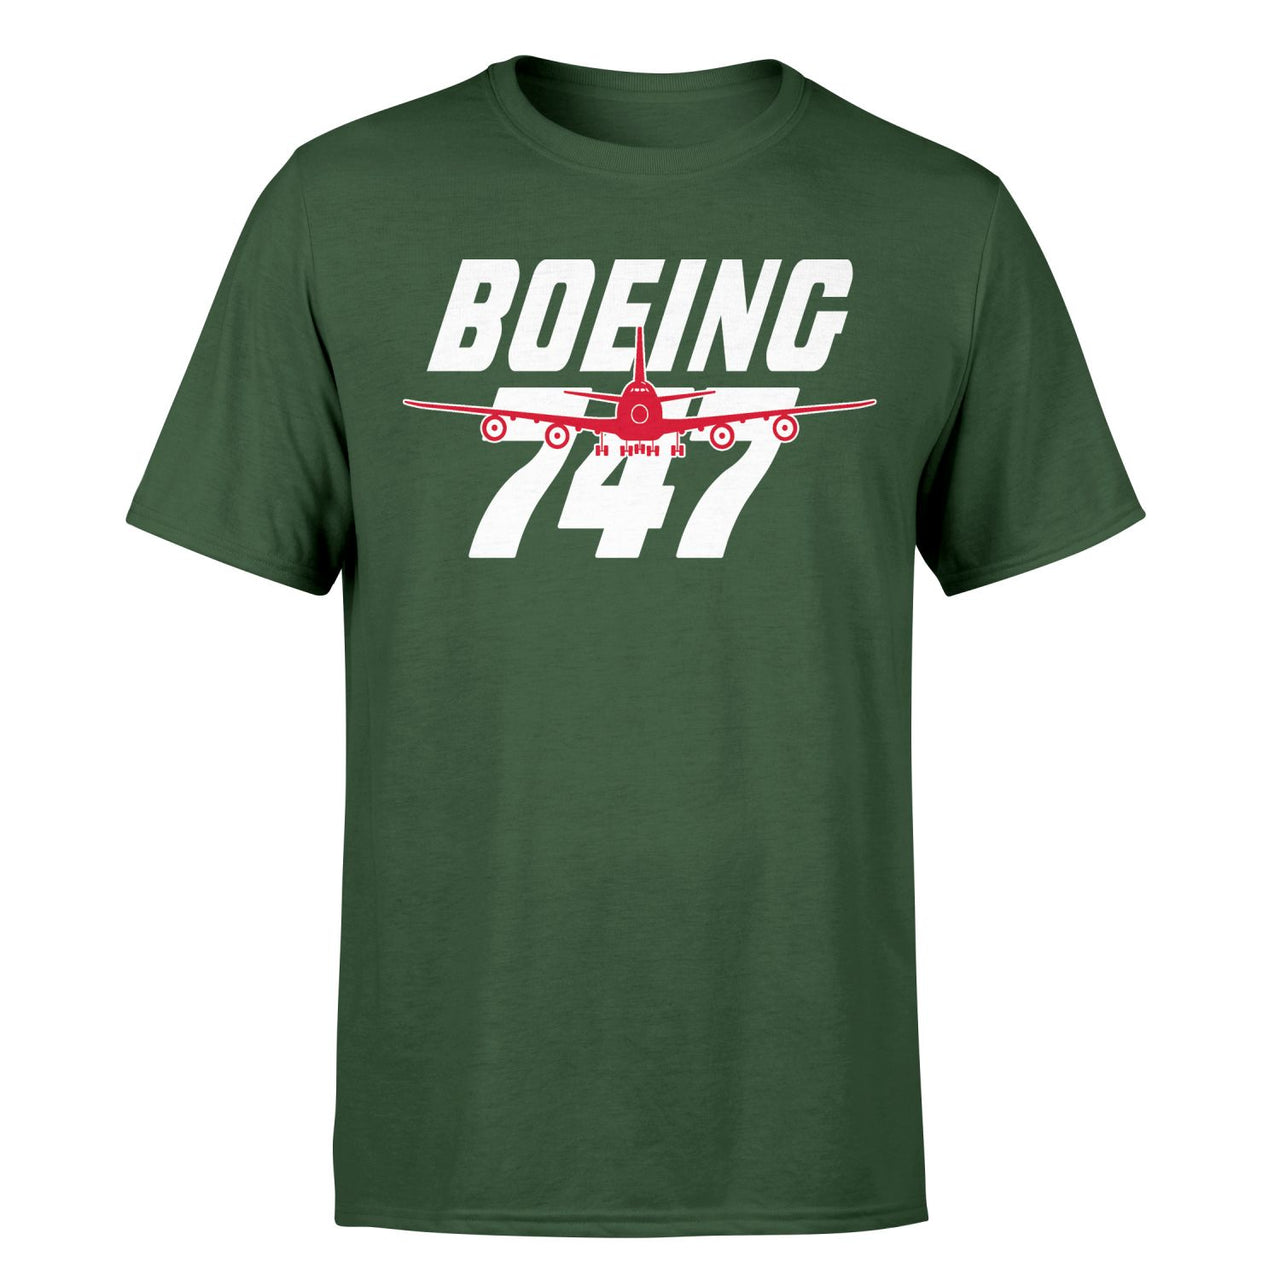 Amazing Boeing 747 Designed T-Shirts